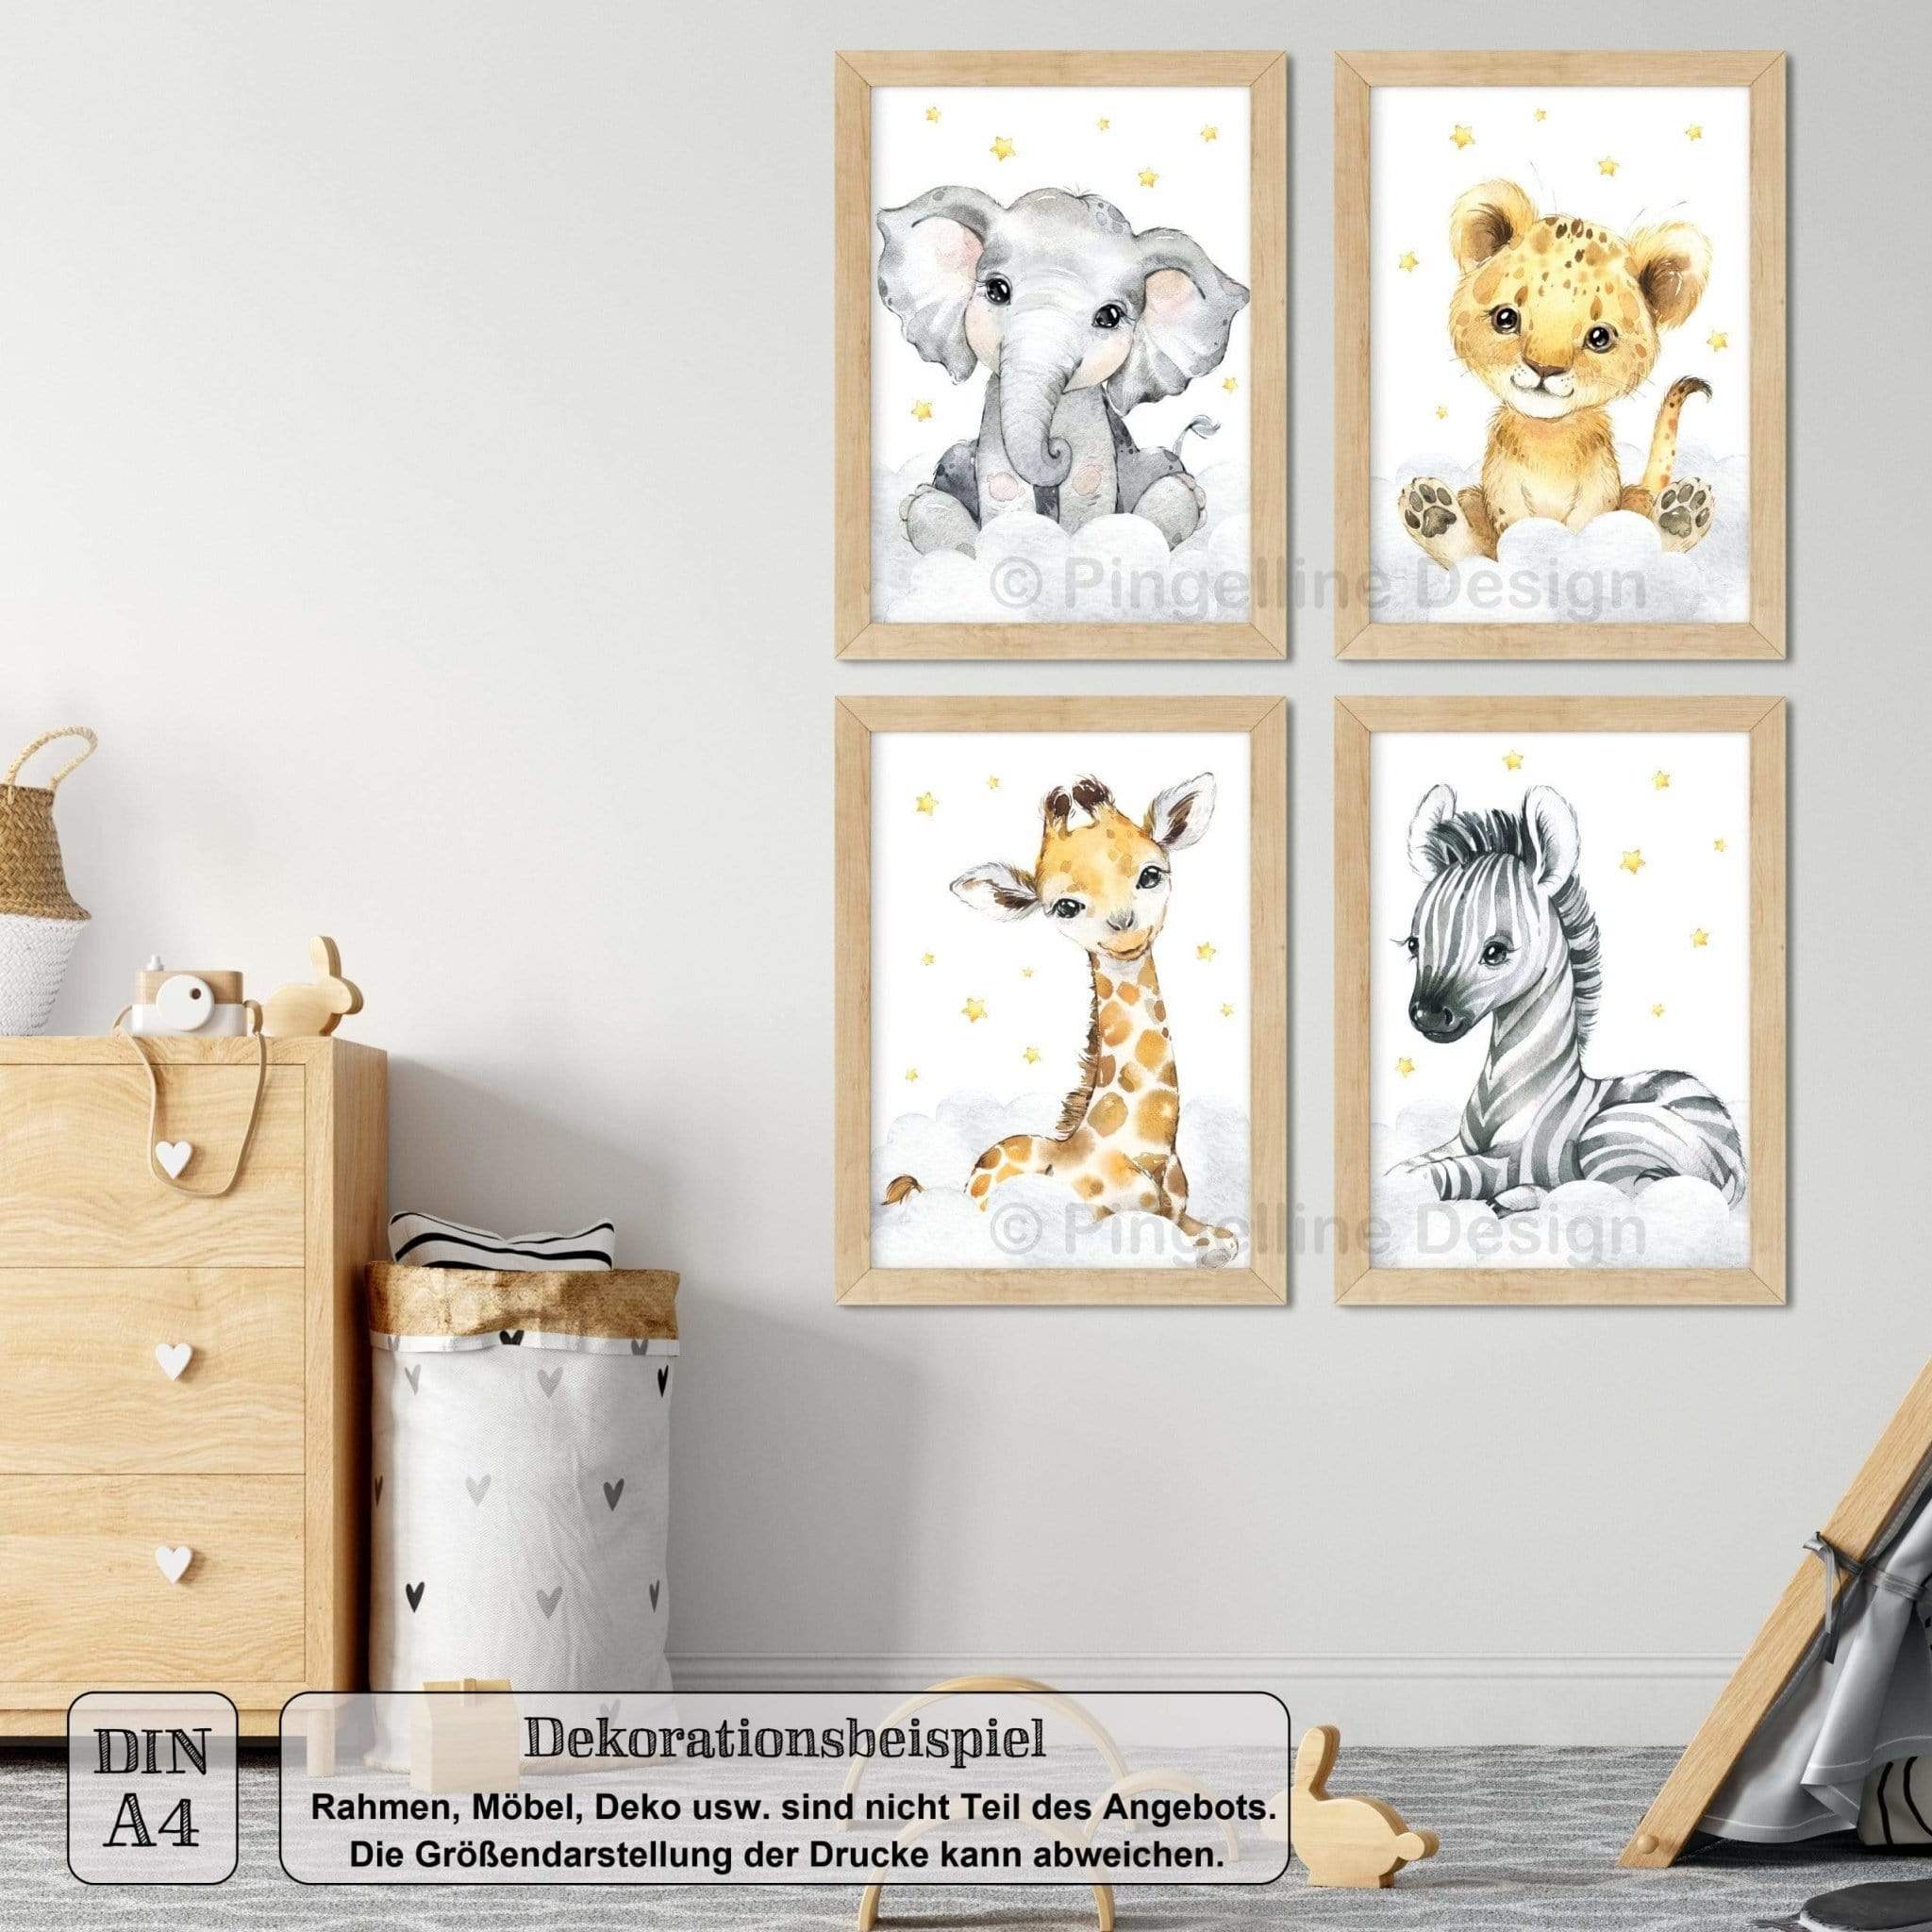 Design A4 Tiere A3 Bilder Pingelline Set Safari / 4er - Kinderzimmer